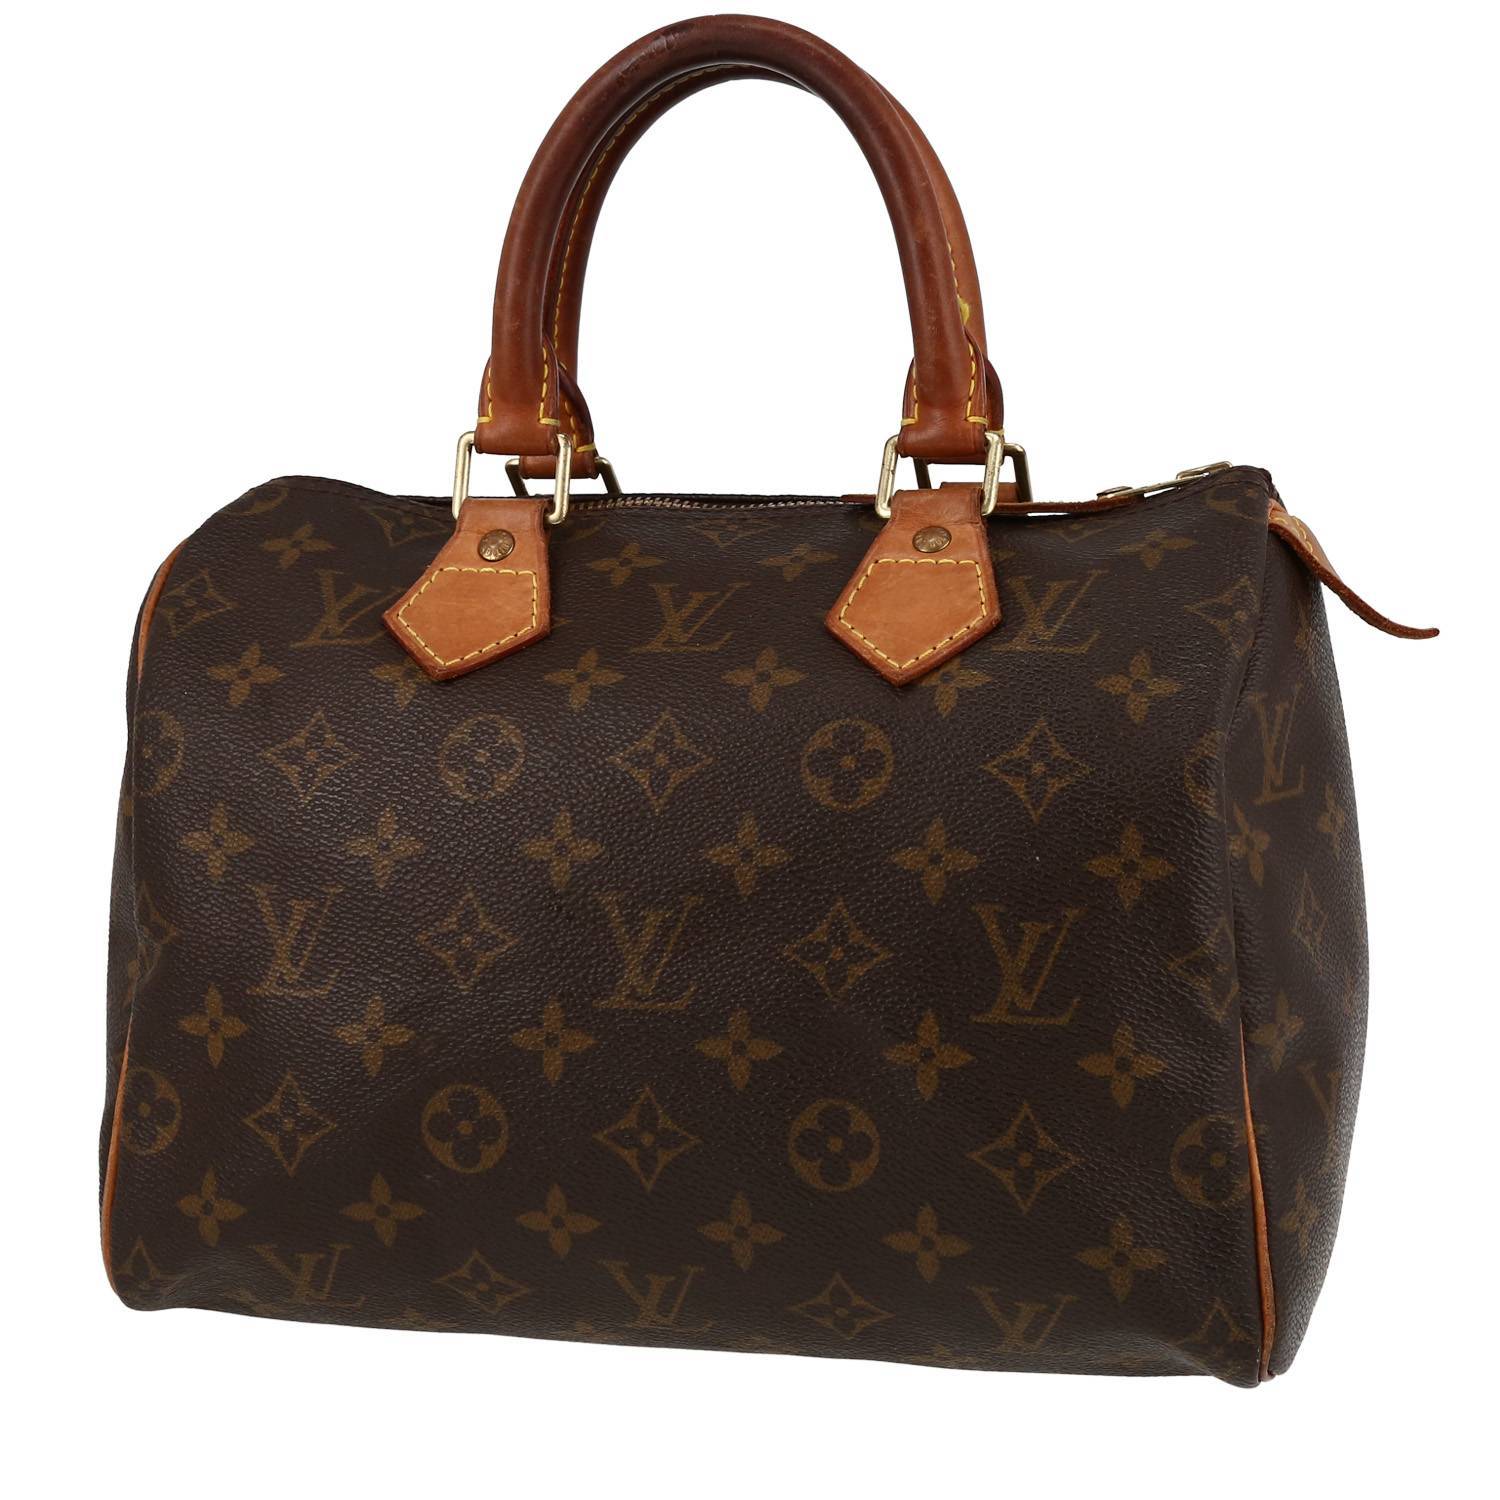 Louis Vuitton Speedy Handbag 403341, Handy little bag